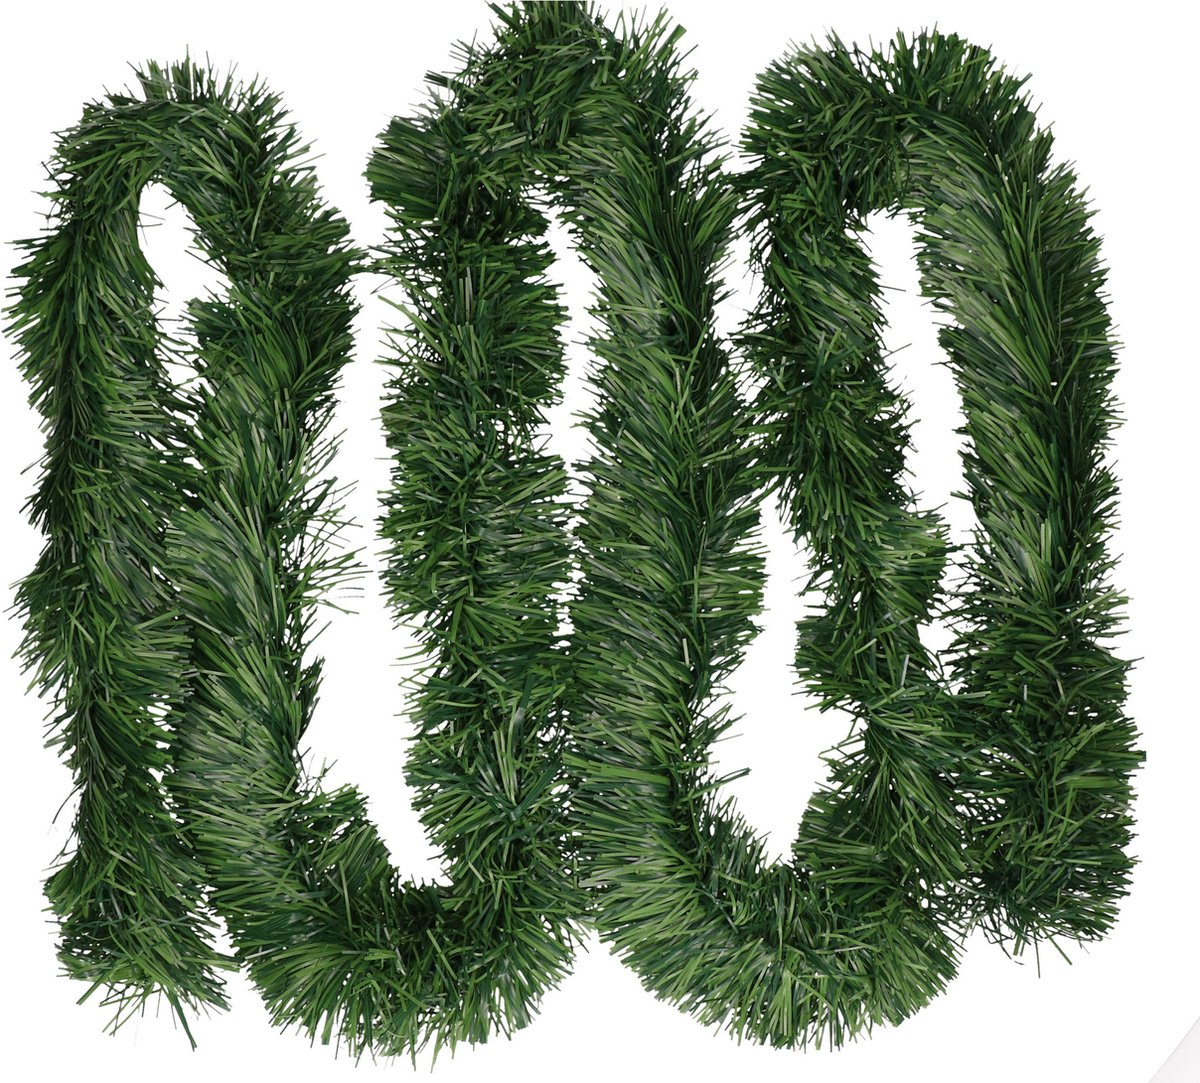 10x Groene kerst decoratie slinger 270 cm - kerstversiering dennen groen